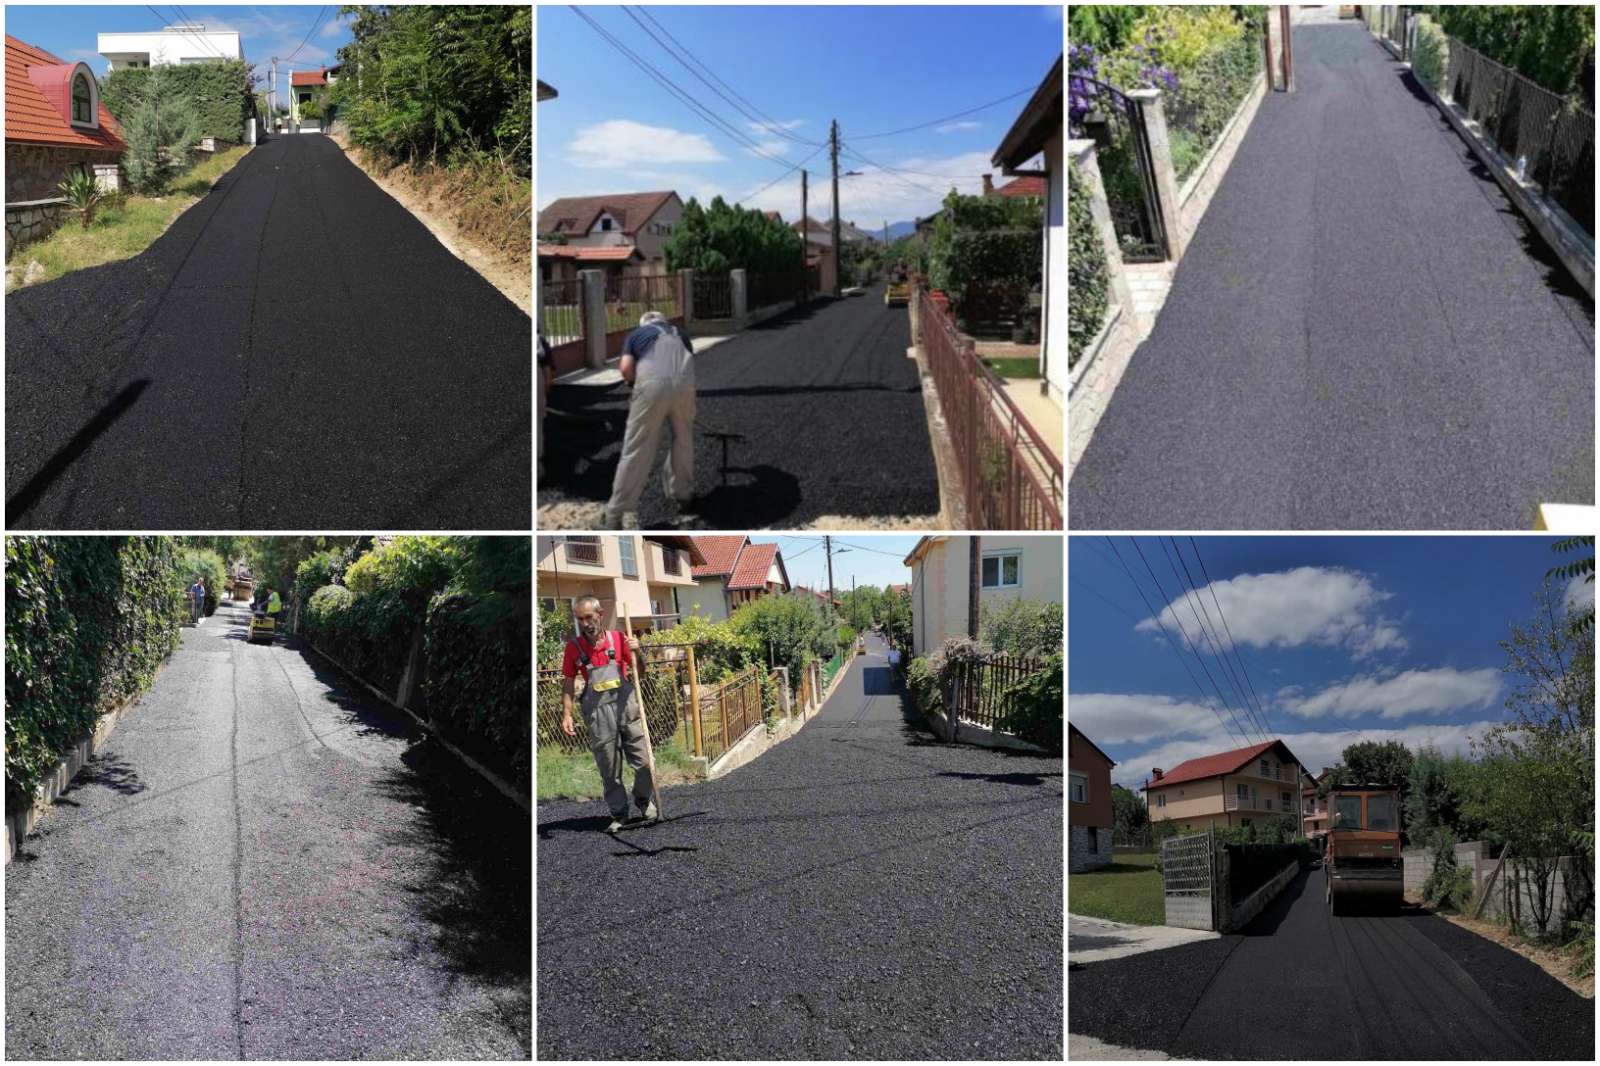 Janë ndërtuar 10 rrugë të reja në vendbanime në komunën Gjorçe Petrov - vazhdojnë aktivitetet ndërtimore për ndërtimin e infrastrukturës së re rrugore